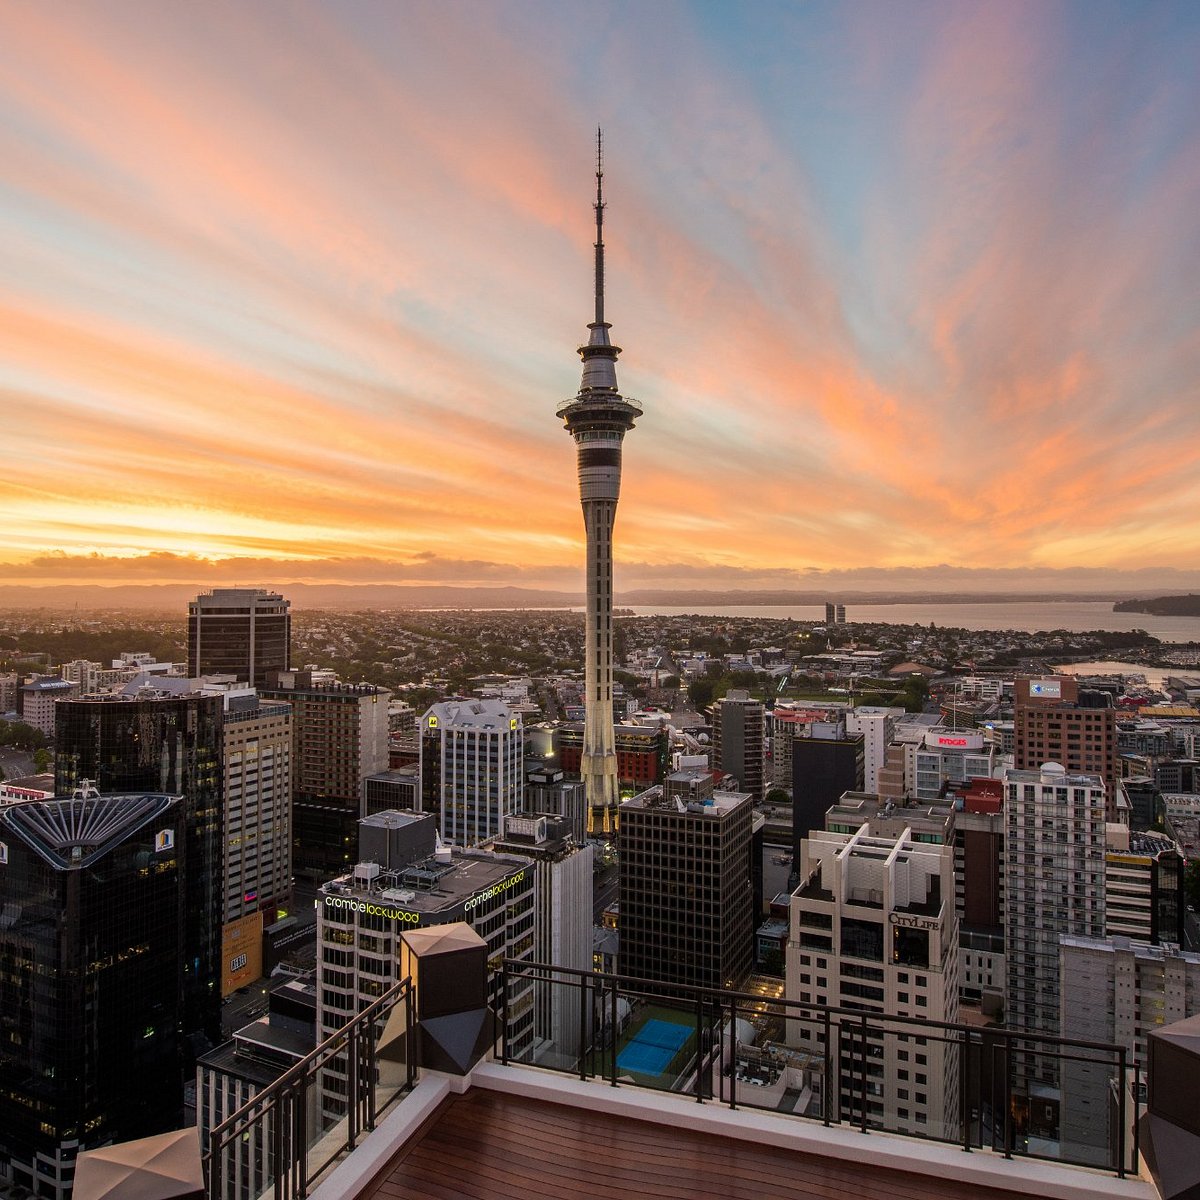 Tòa nhà Sky Tower nằm ở trung tâm Thành phố Auckland, Nez Zealand và chiếm vị trí độc đáo để cho bạn có một cái nhìn toàn cảnh đầy đủ về Thành phố. Hãy đến đây vào đêm khuya để chiêm ngưỡng bầu trời đầy sao và ngắm nhìn vẻ đẹp của Thành phố hoàng hôn.